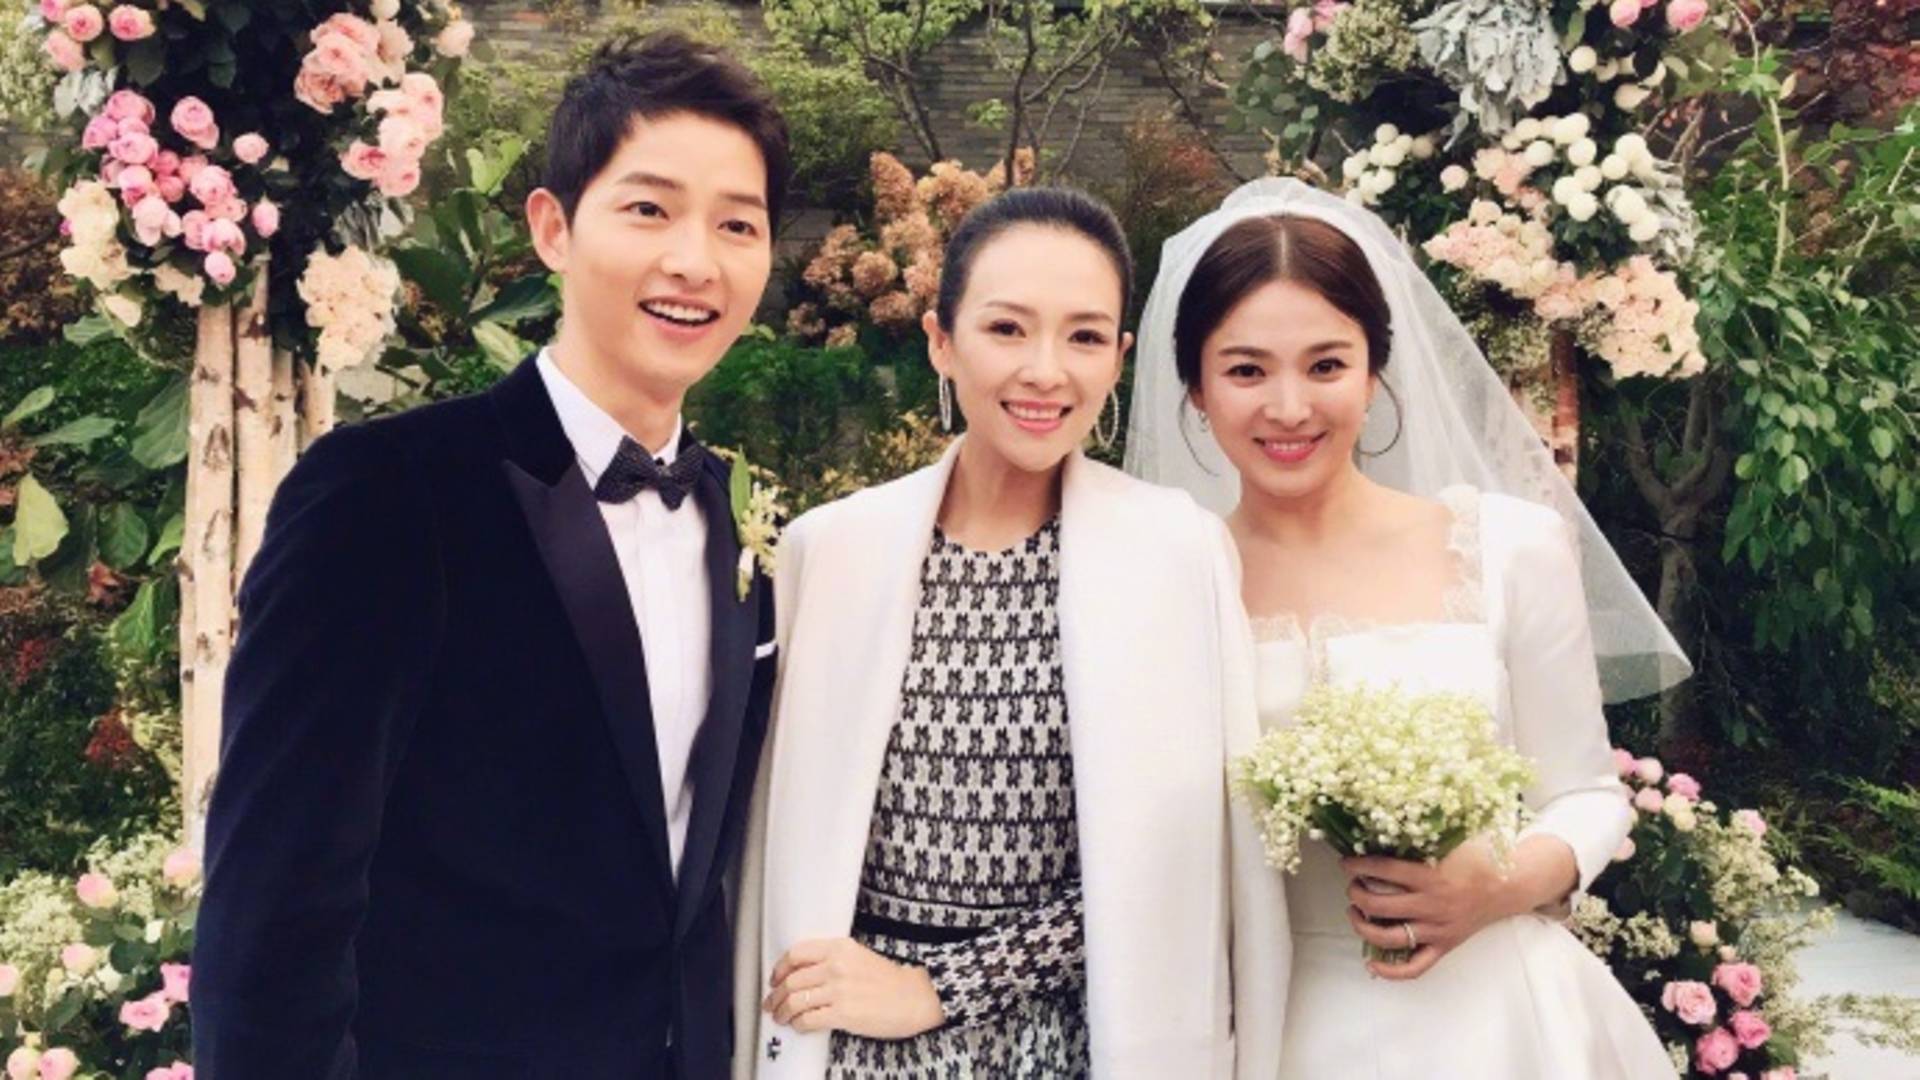 Song Joong Ki and Song Hye Kyo divorce